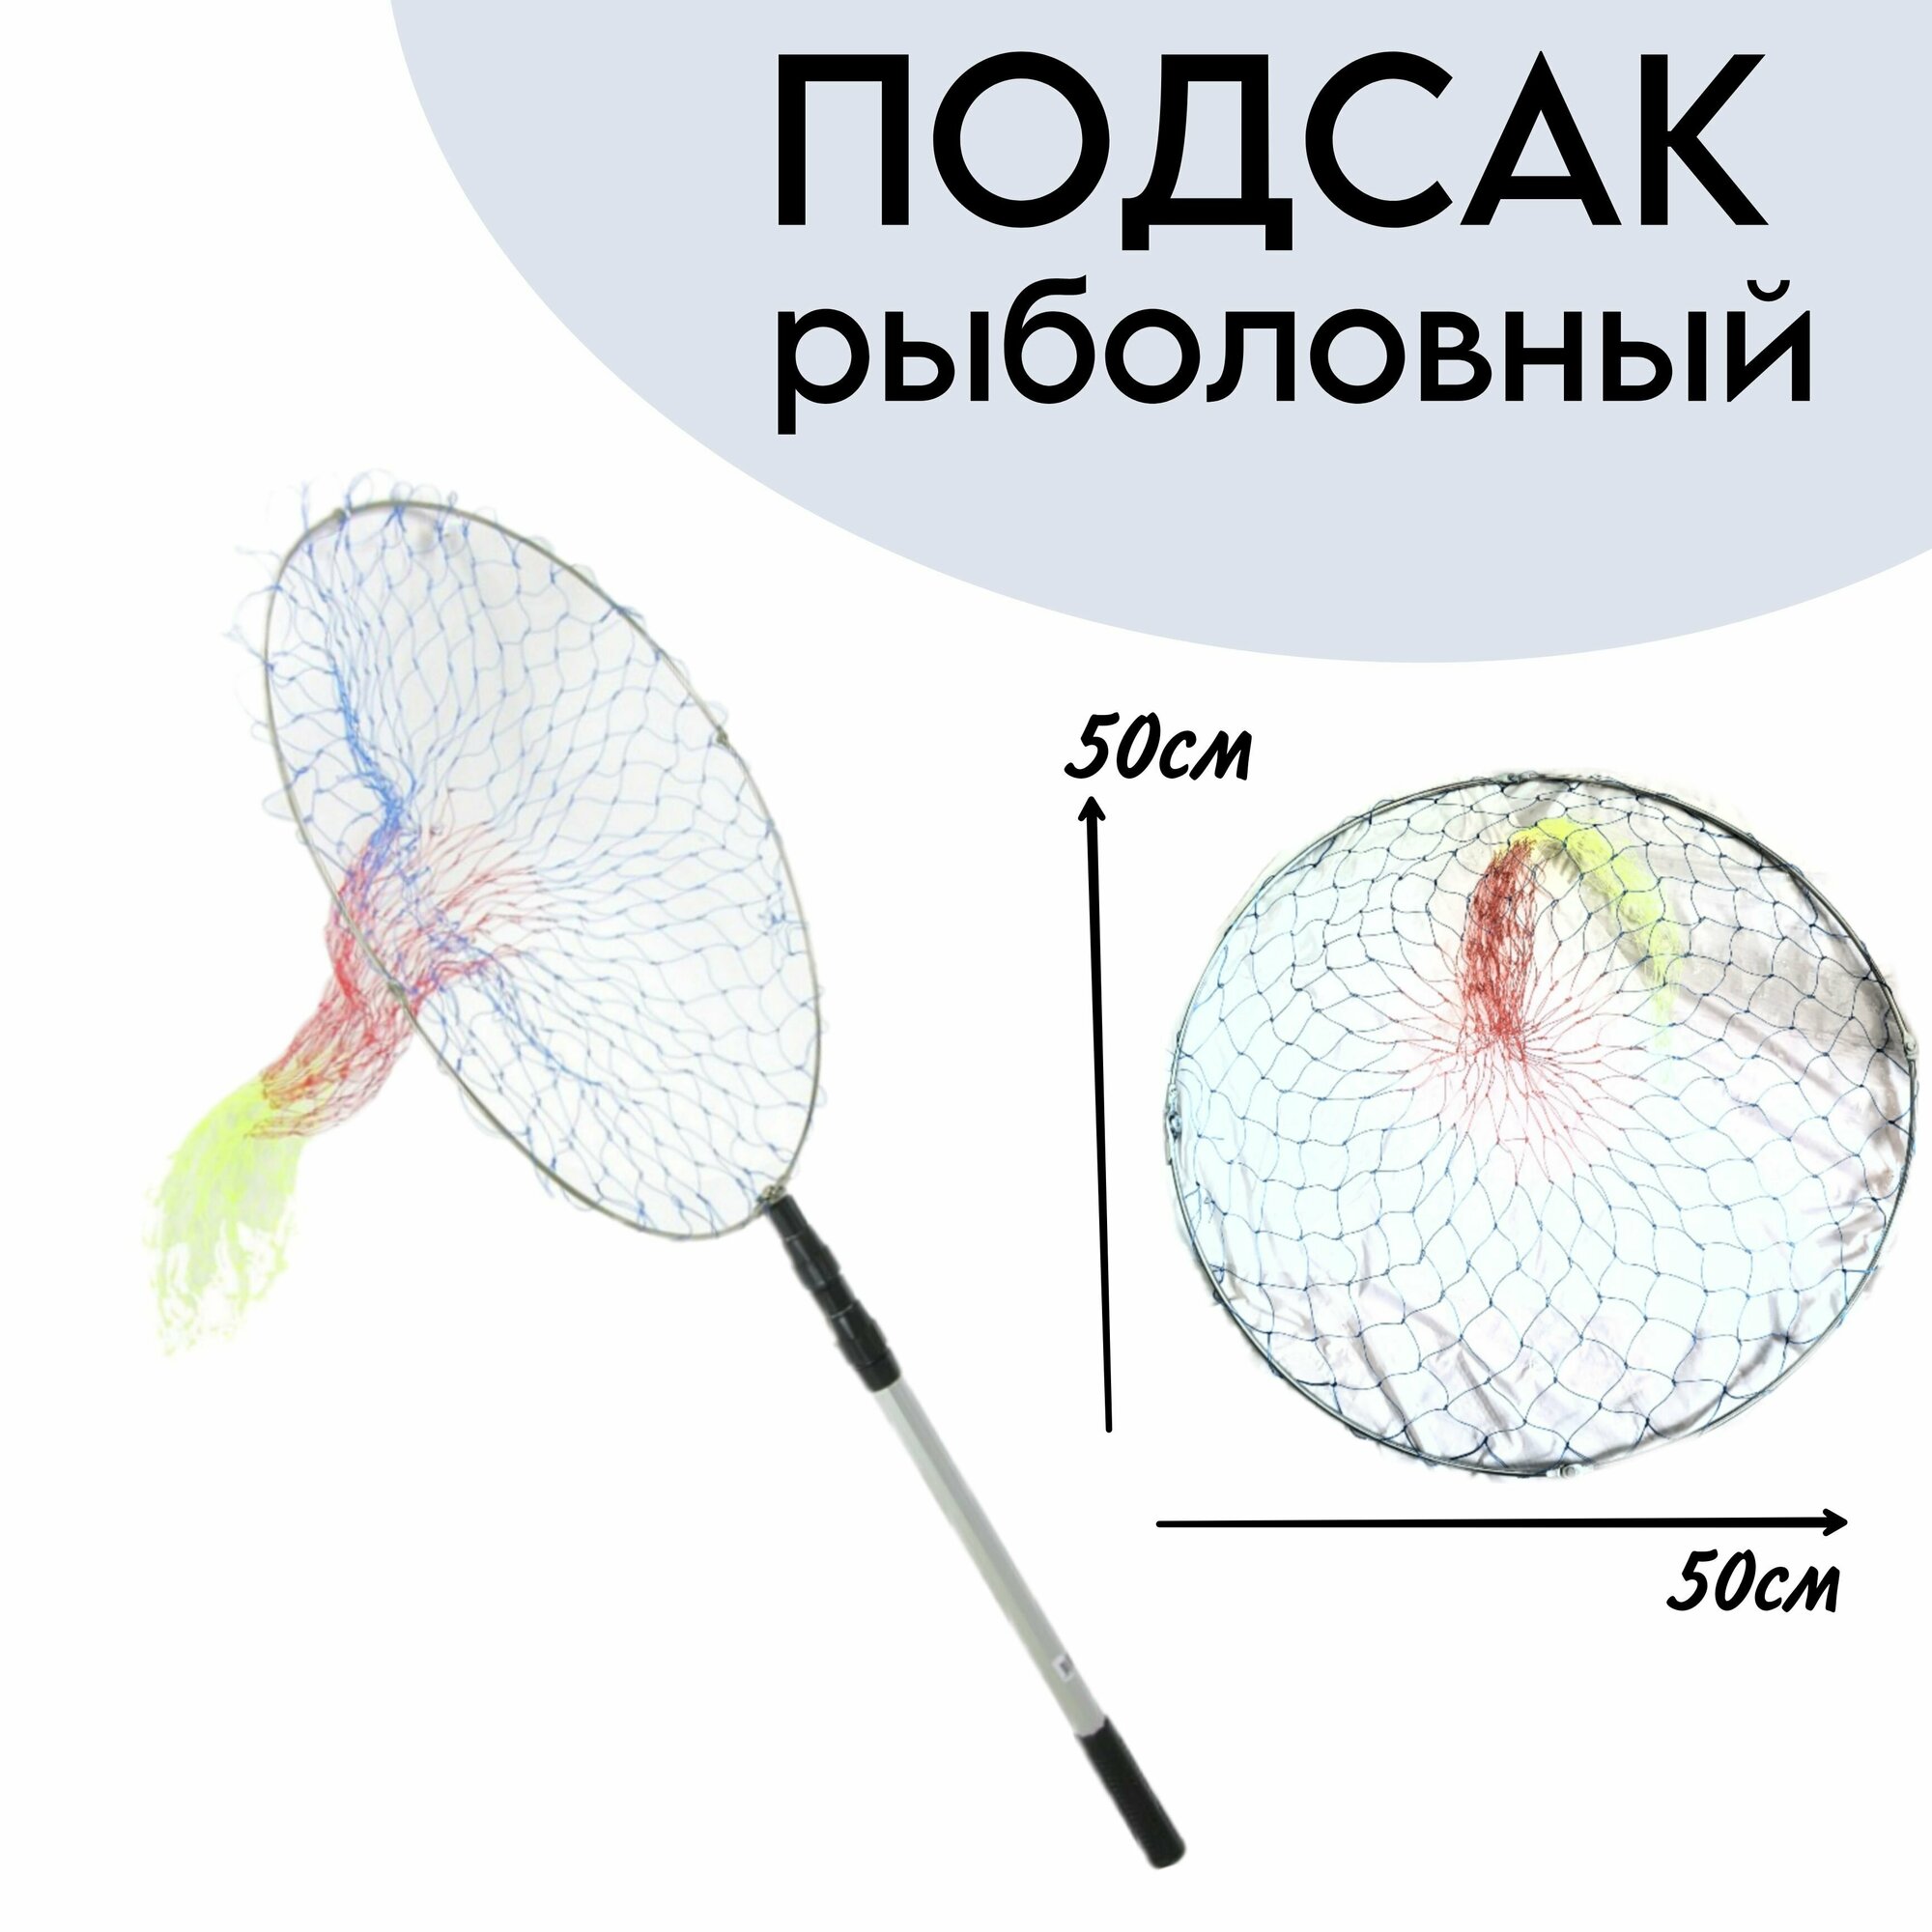 Подсак для рыбалки телескопический круглый 134 см, d-50 см, сетка из лески